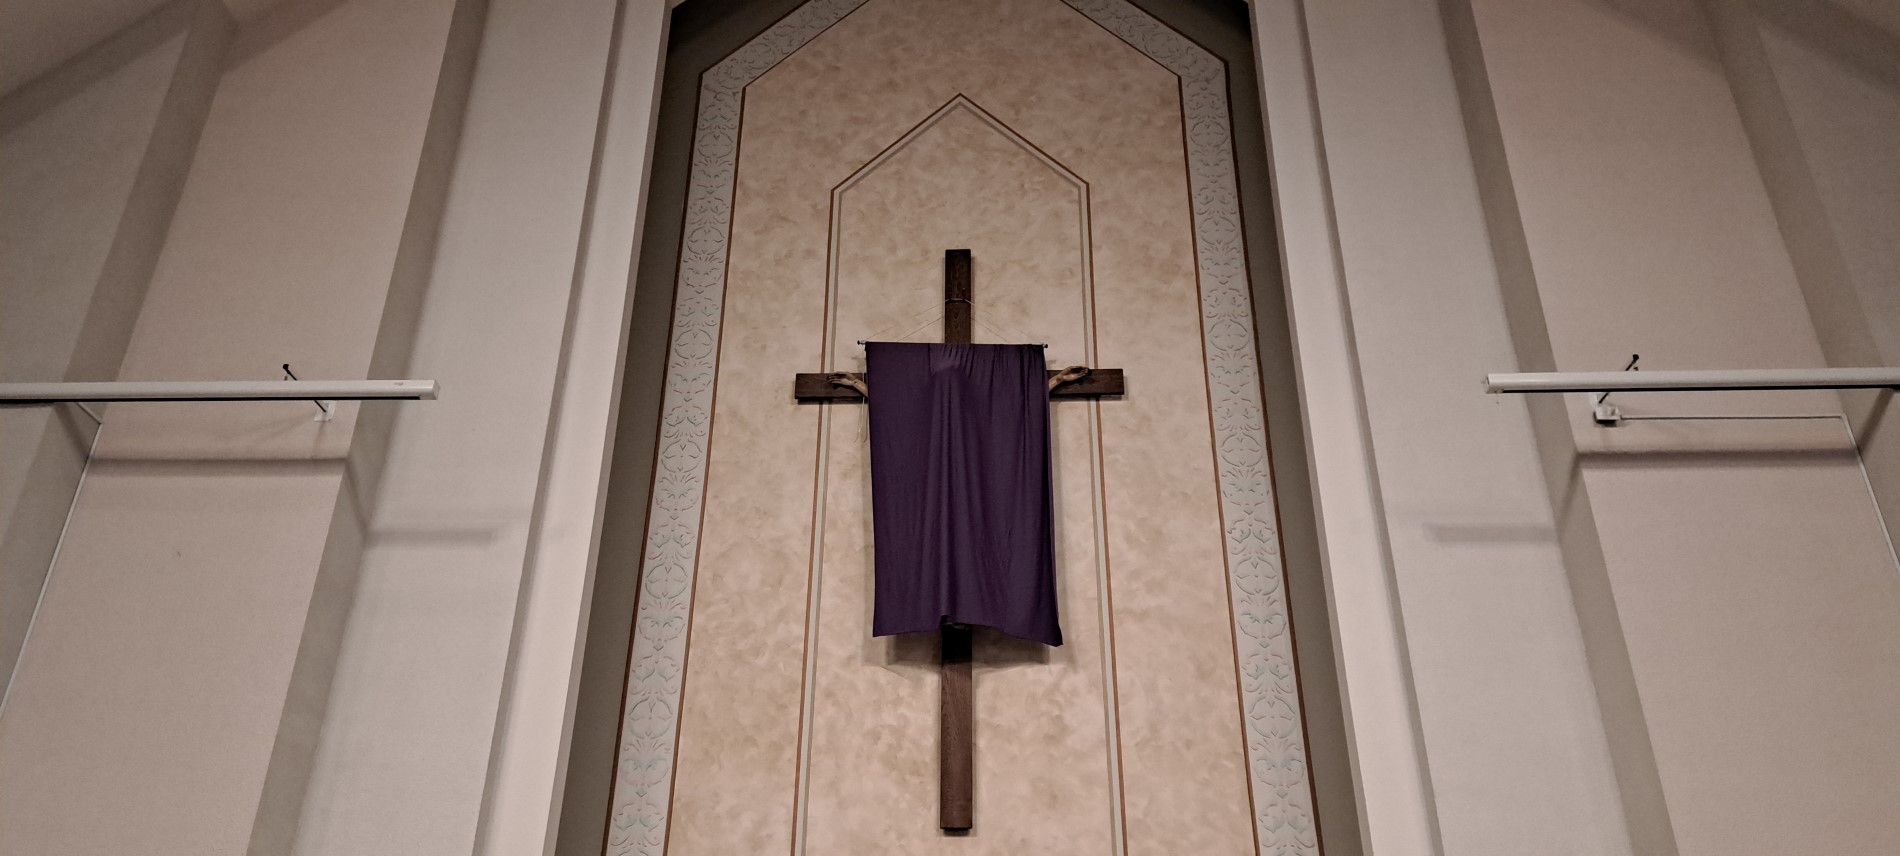 Big crucifix veiled in purple cloth